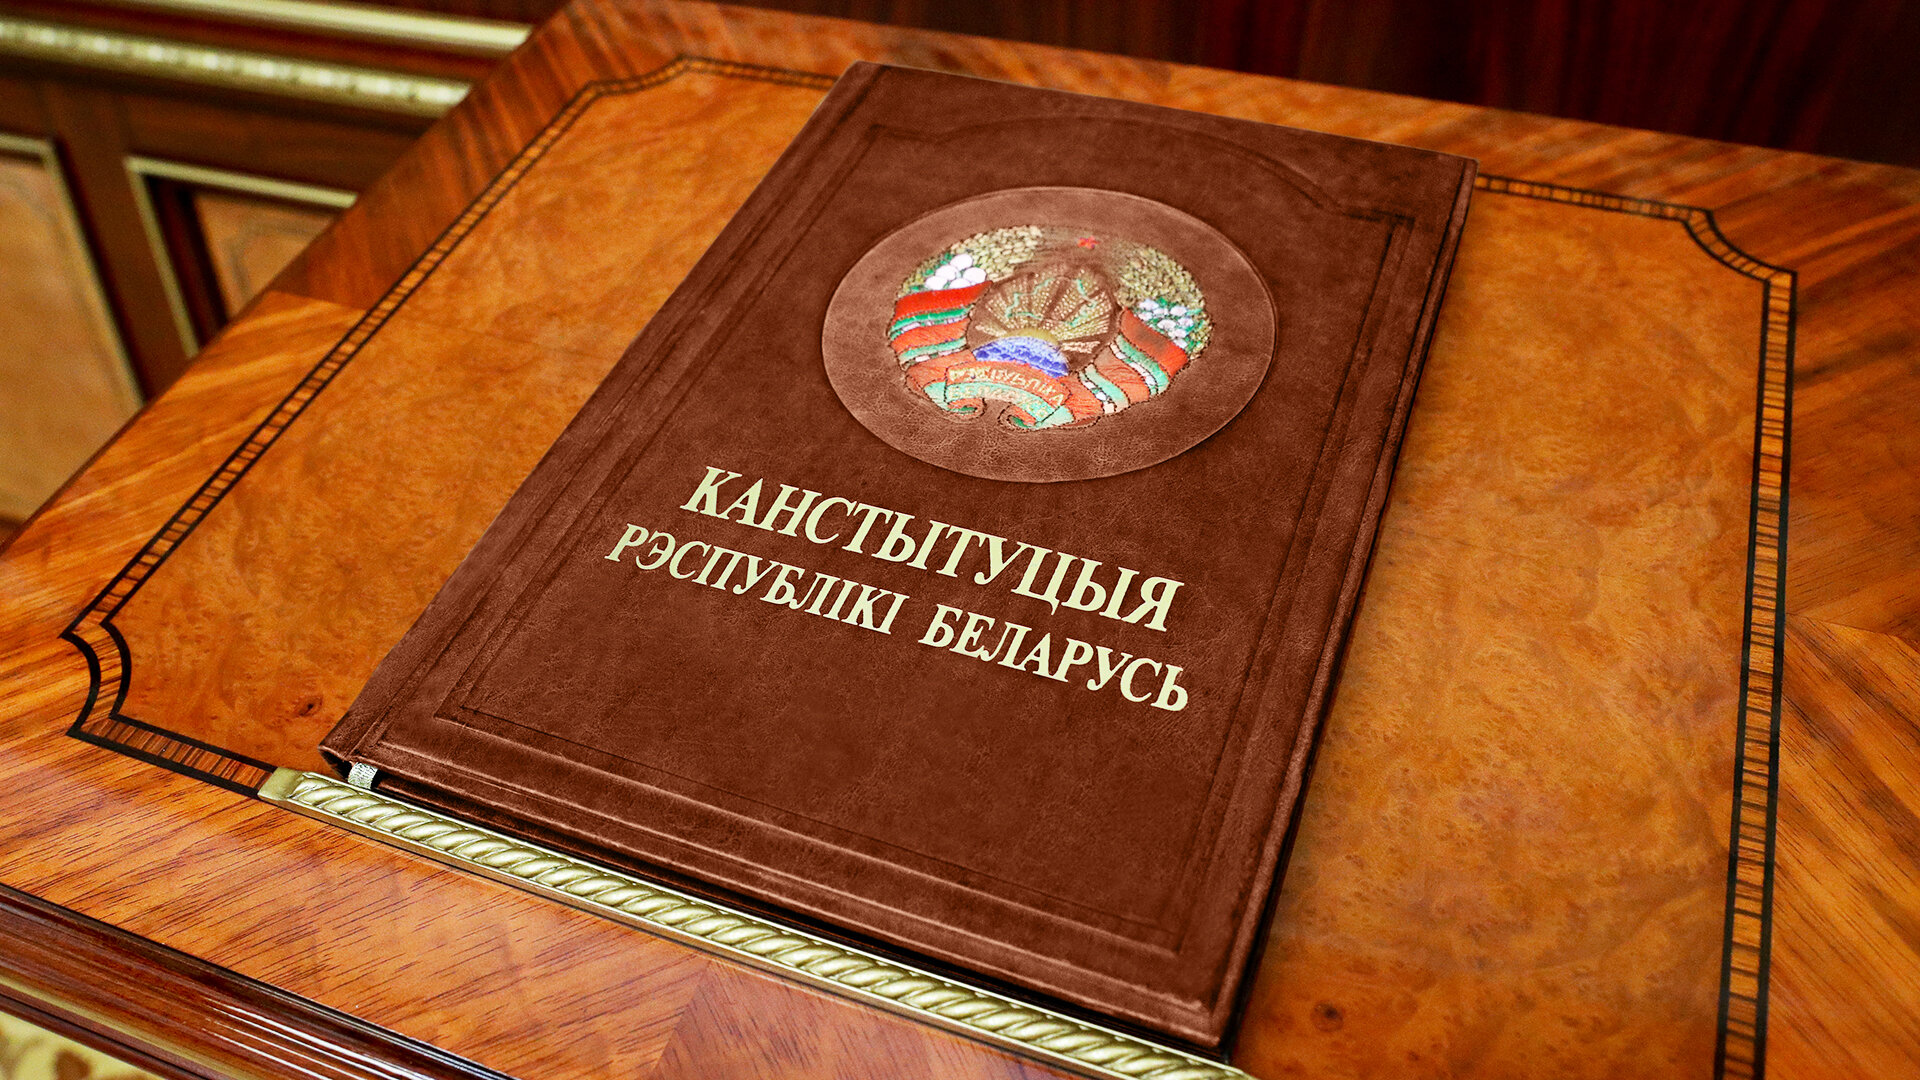 Проект изменений и дополнений Конституции Республики Беларусь для всенародного обсуждения | Официальный интернет-портал Президента Республики Беларусь